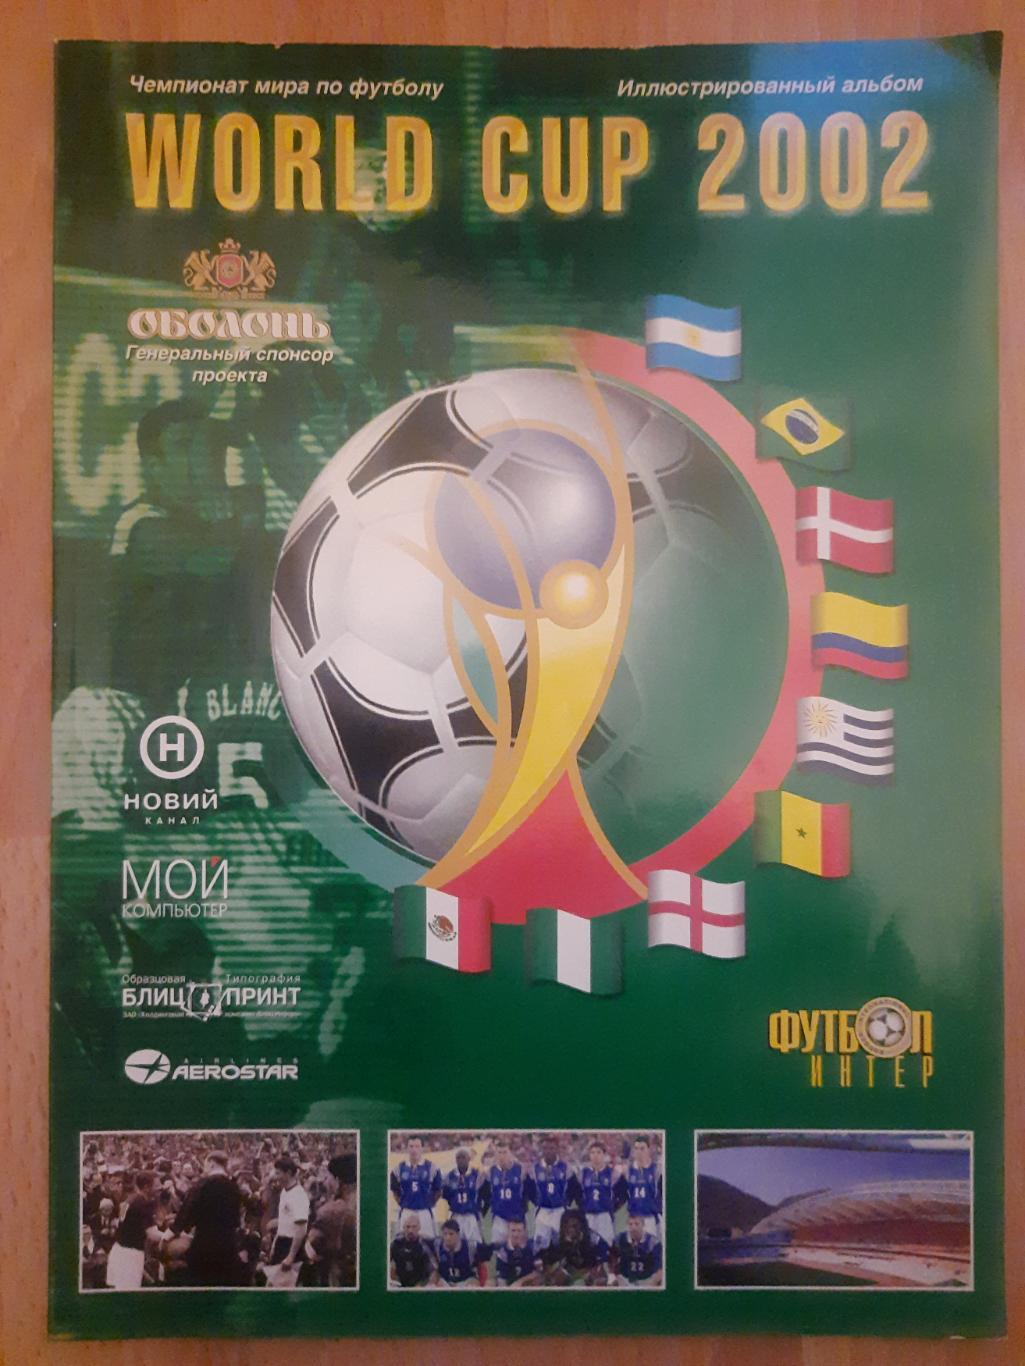 иллюстрированный альбом,Кубок Мира(World Cup) 2002